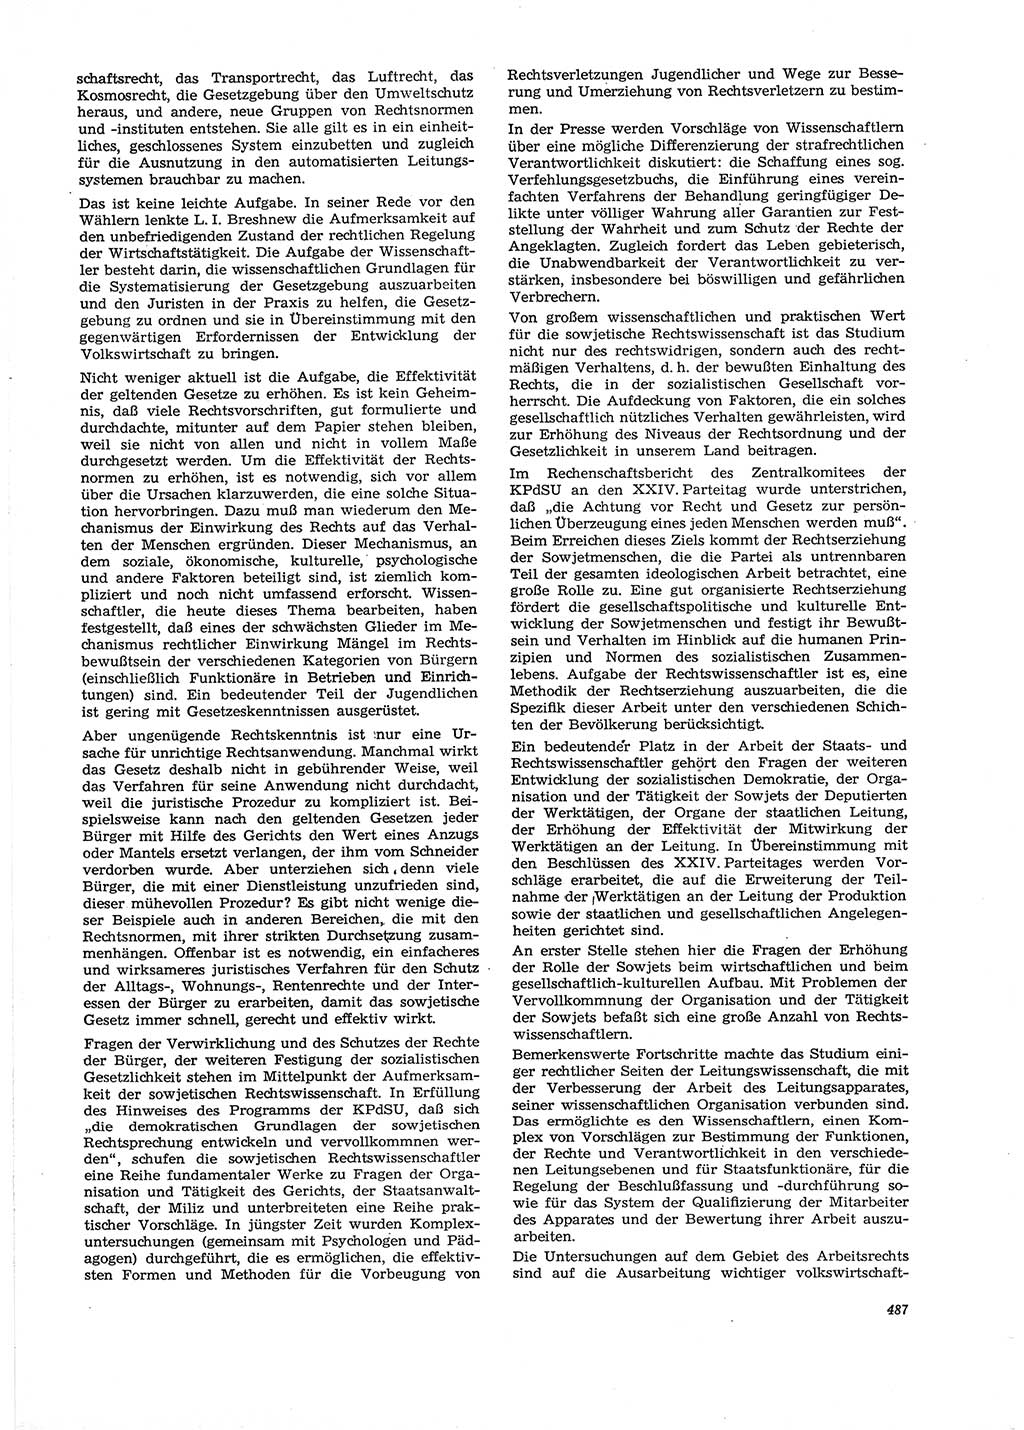 Neue Justiz (NJ), Zeitschrift für Recht und Rechtswissenschaft [Deutsche Demokratische Republik (DDR)], 29. Jahrgang 1975, Seite 487 (NJ DDR 1975, S. 487)